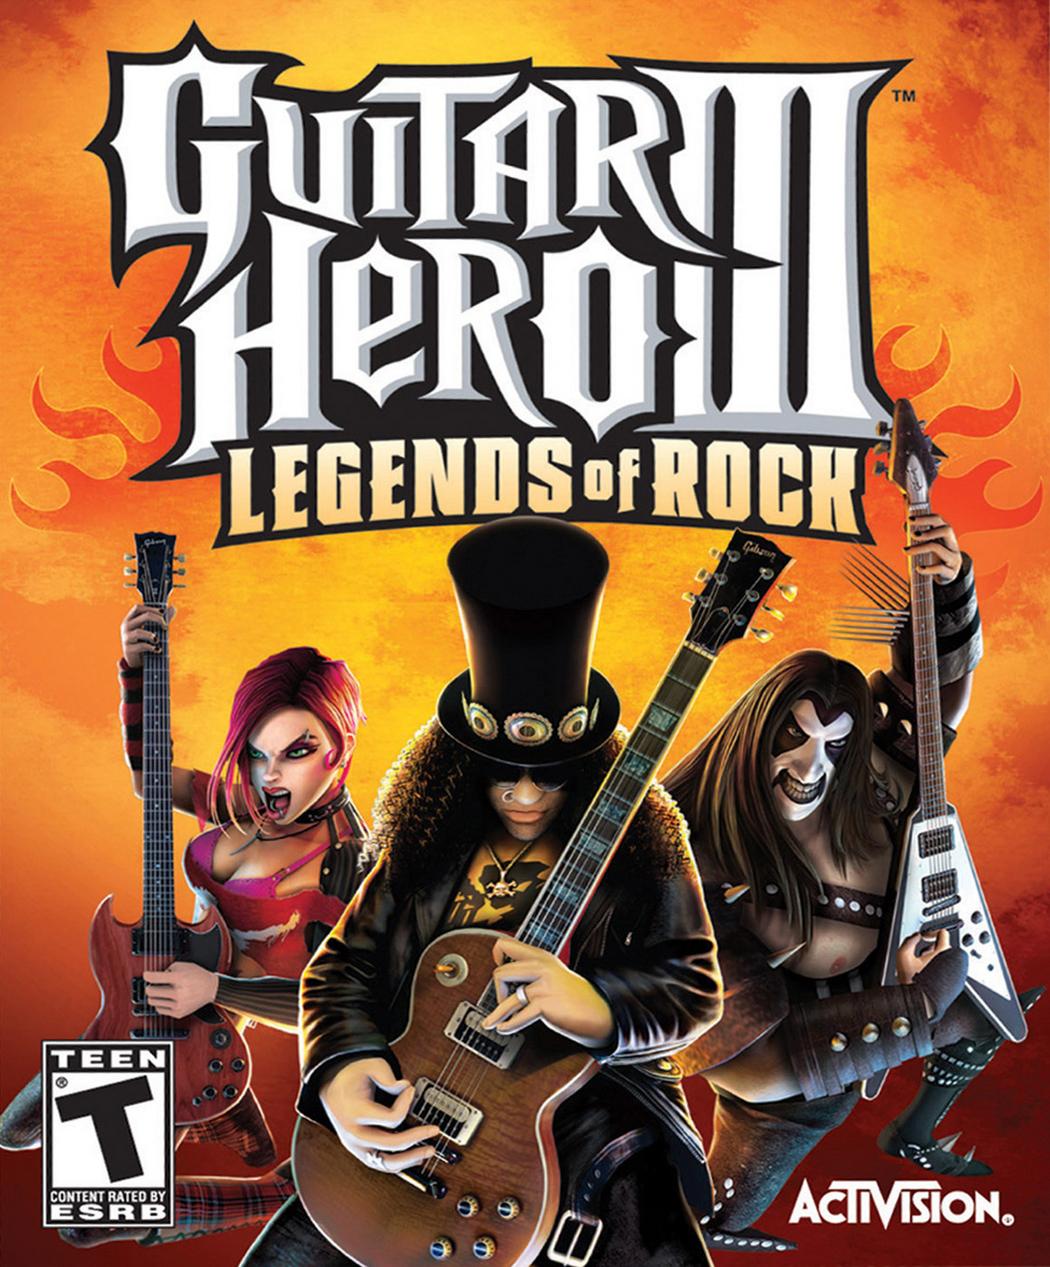 "Guitar Hero III: Legends of Rock" Album Cover